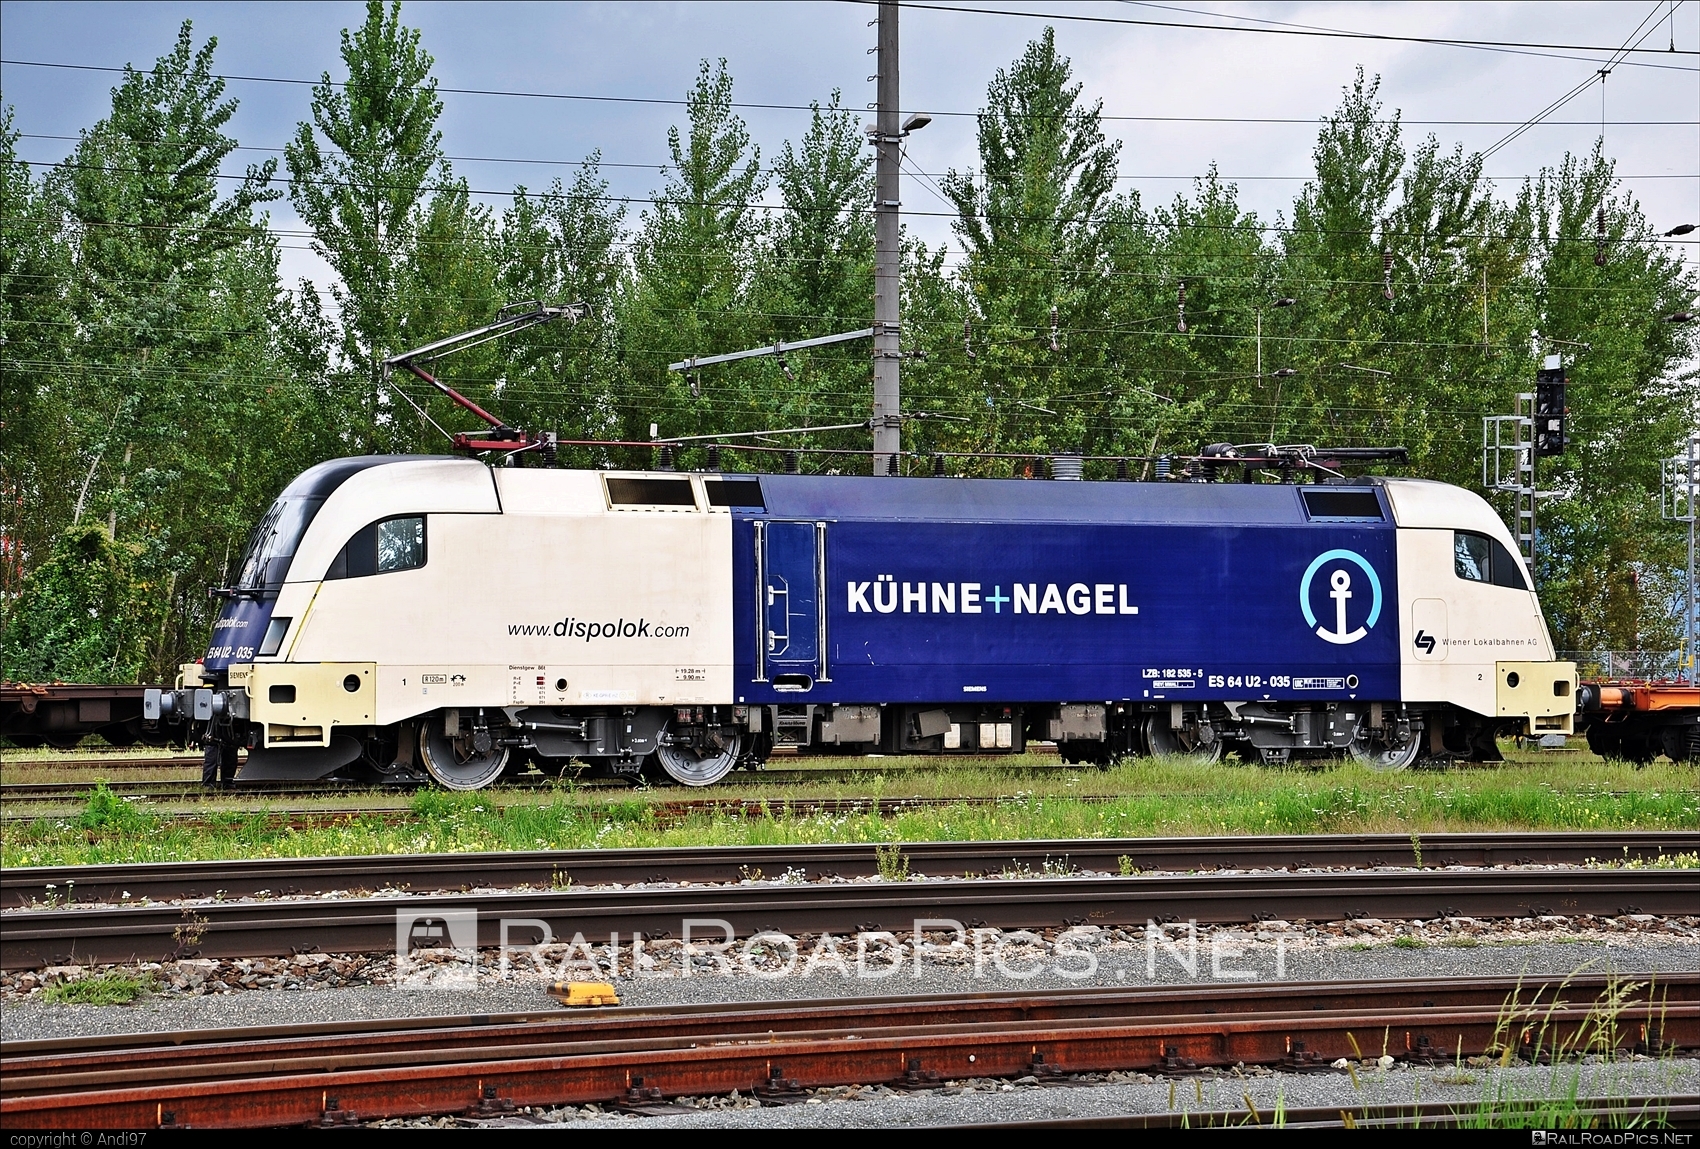 Siemens ES 64 U2 - 182 535 operated by Wiener Lokalbahnen Cargo GmbH #dispolok #es64 #es64u2 #eurosprinter #kuehneundnagel #mitsuirailcapitaleurope #mitsuirailcapitaleuropegmbh #mrce #siemens #siemensEs64 #siemensEs64u2 #siemenstaurus #taurus #tauruslocomotive #wienerlokalbahnencargo #wienerlokalbahnencargogmbh #wlc